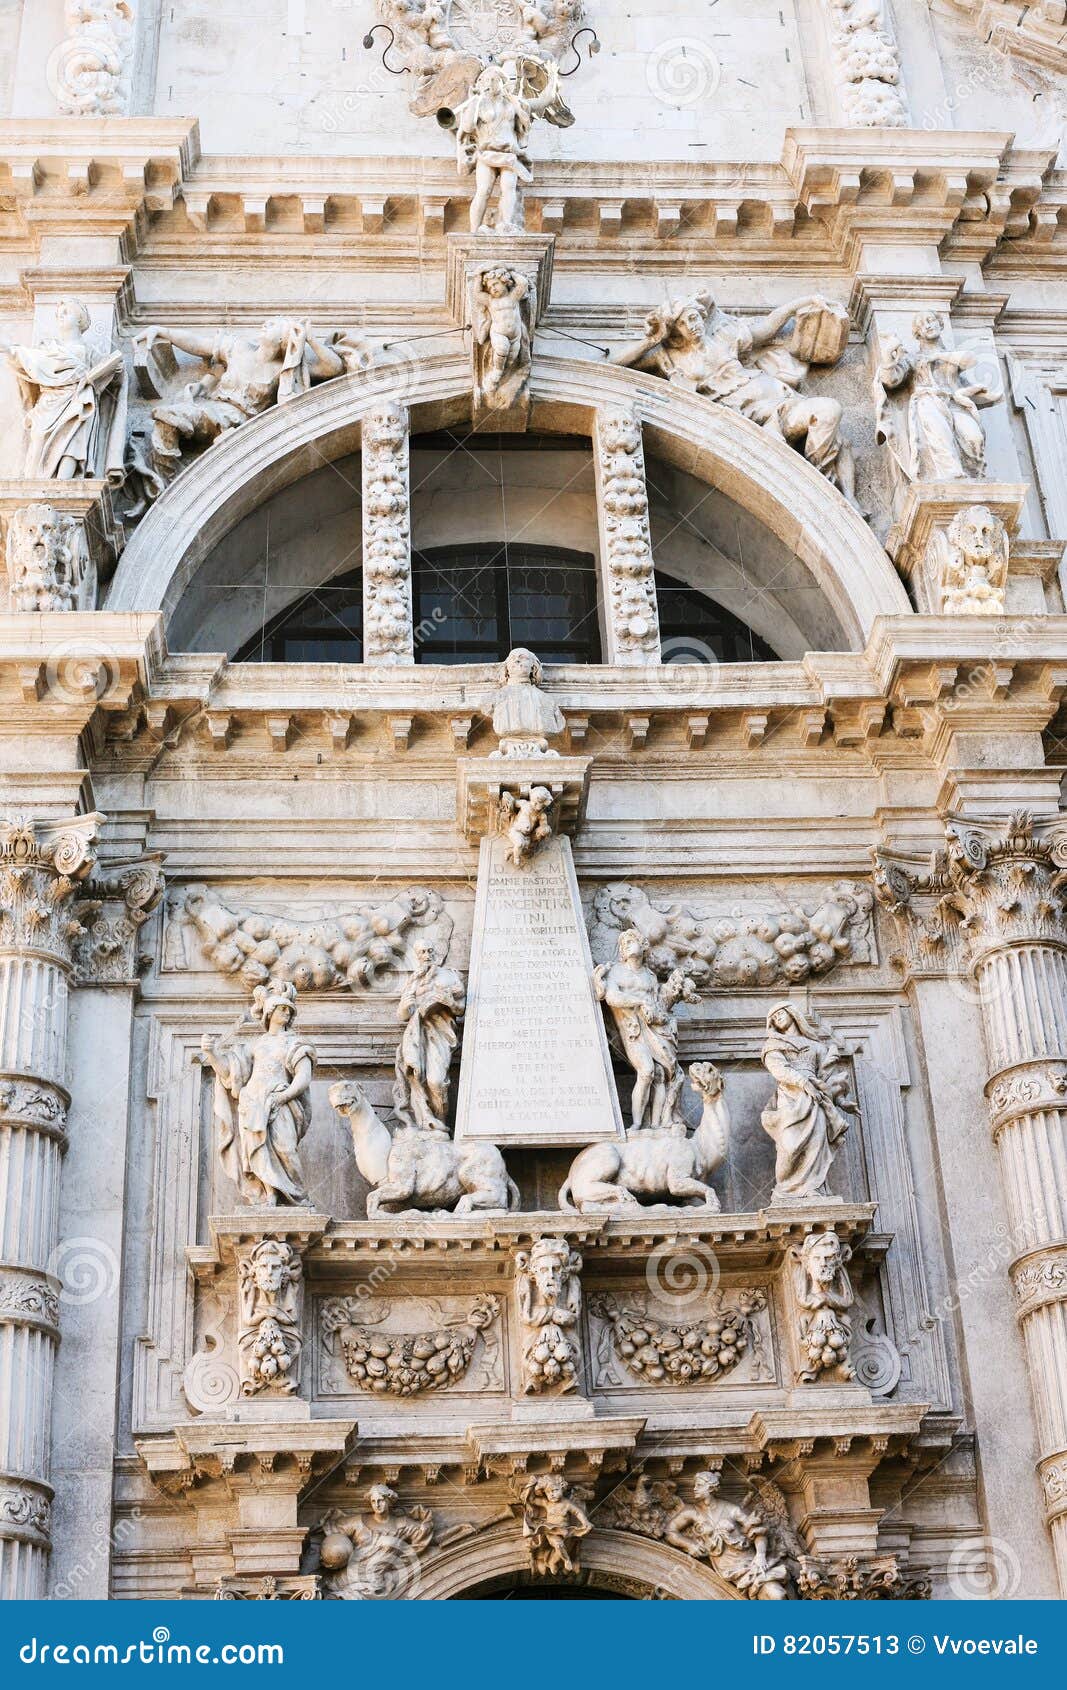 statue of vincenzo fini on facade church